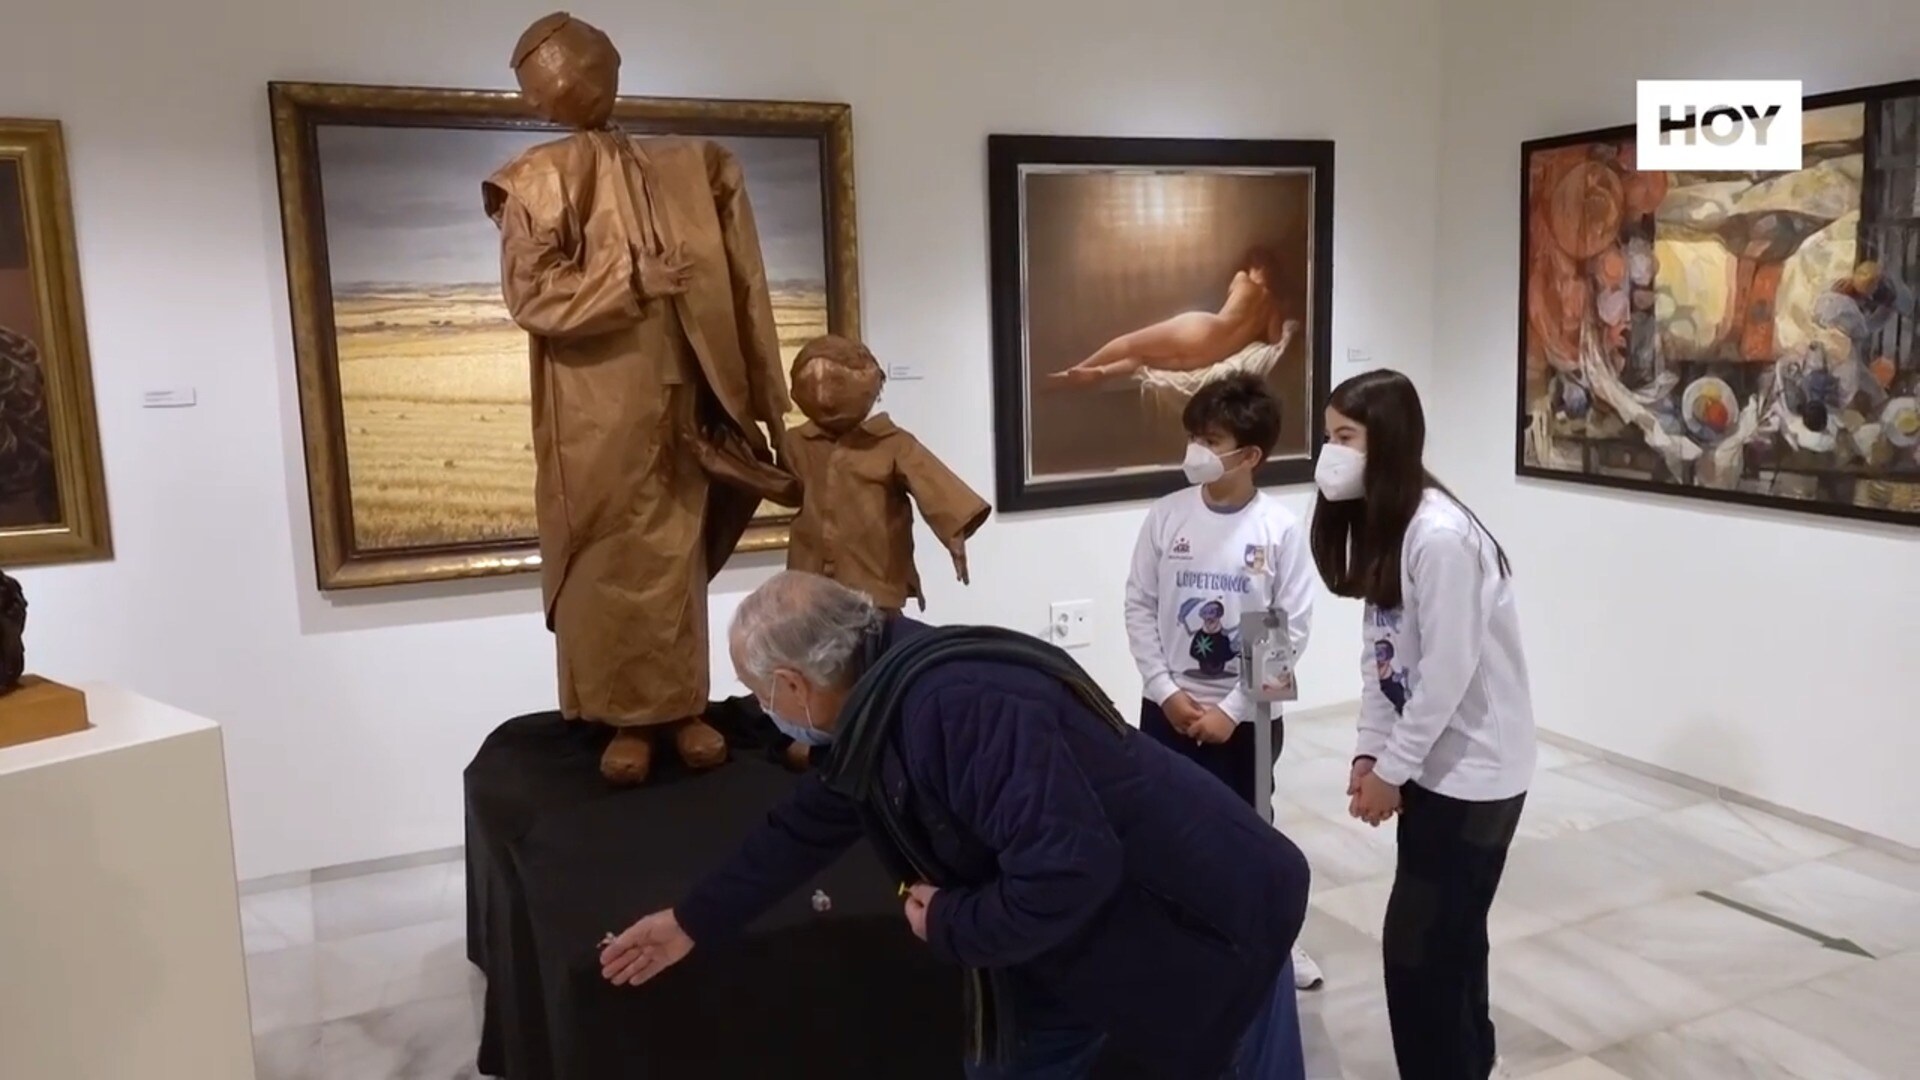 El MUBA expone un cuadro y una escultura recreados con robots